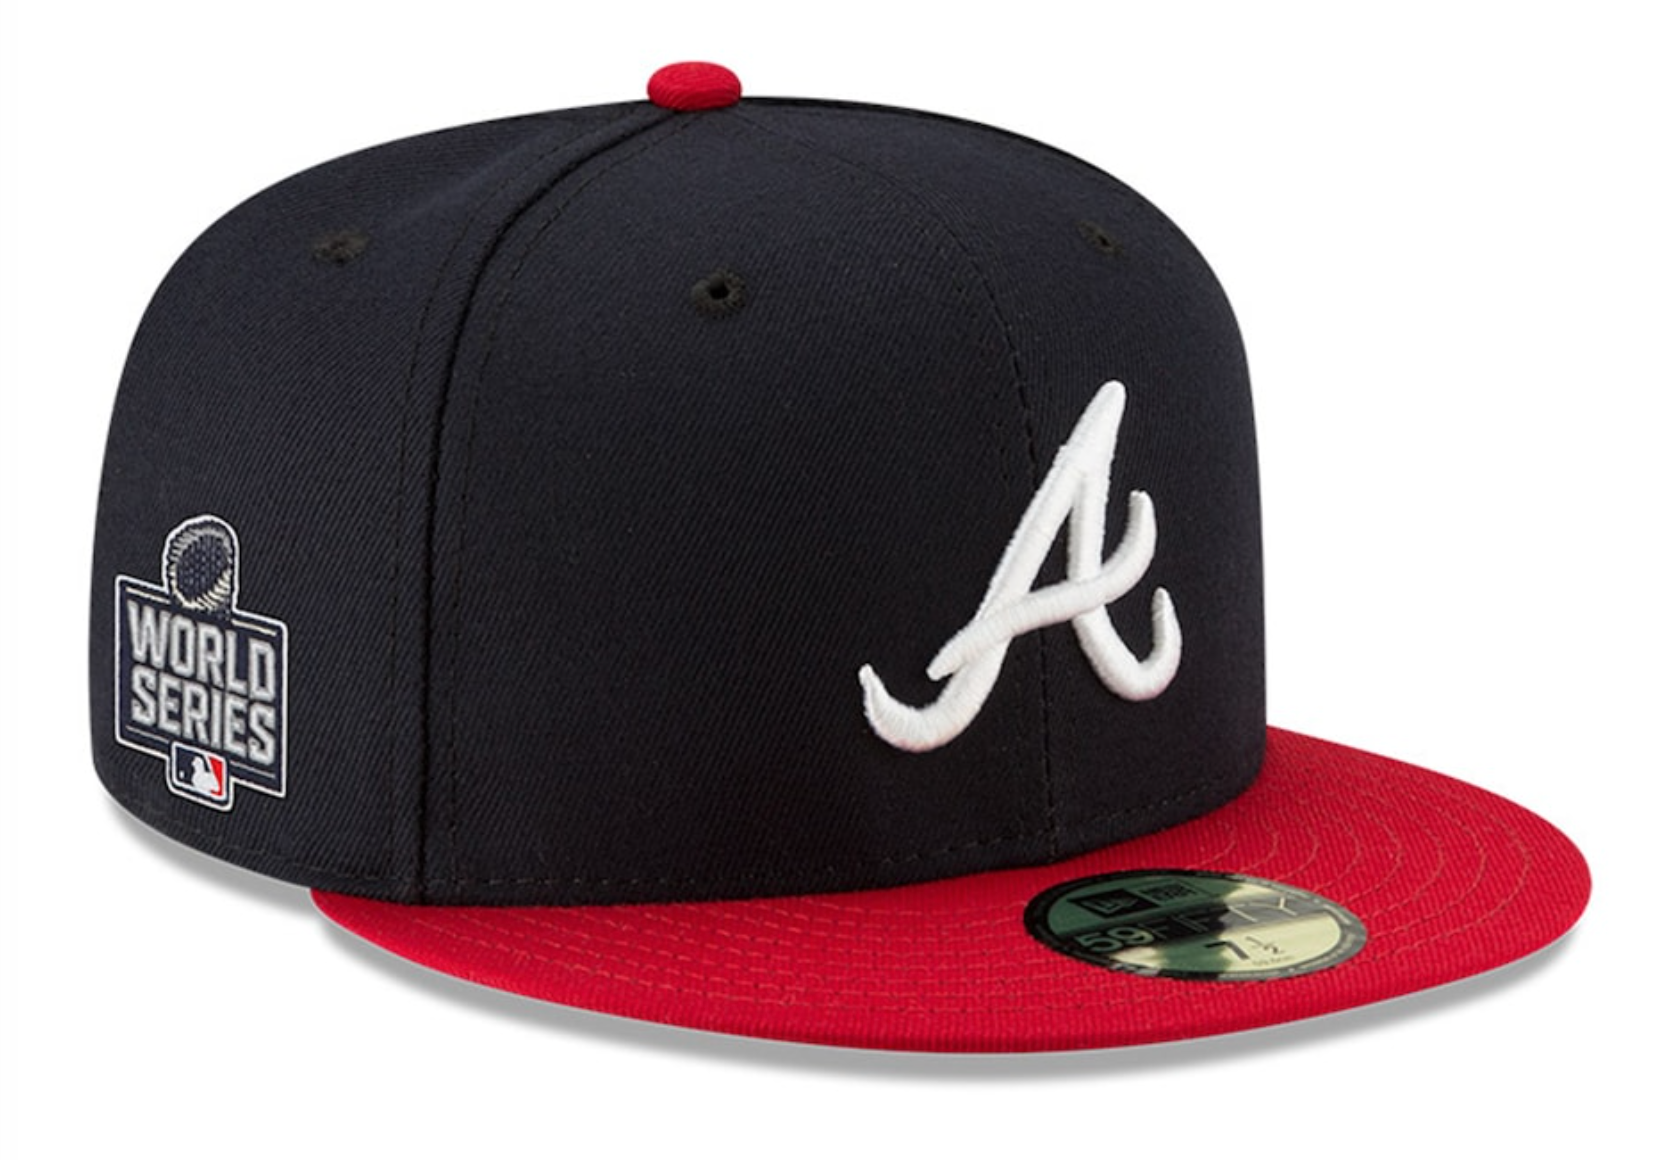 Large MLB Atlanta Braves Jersey. Nike. No name  Atlanta braves jersey, Atlanta  braves, Clothes design